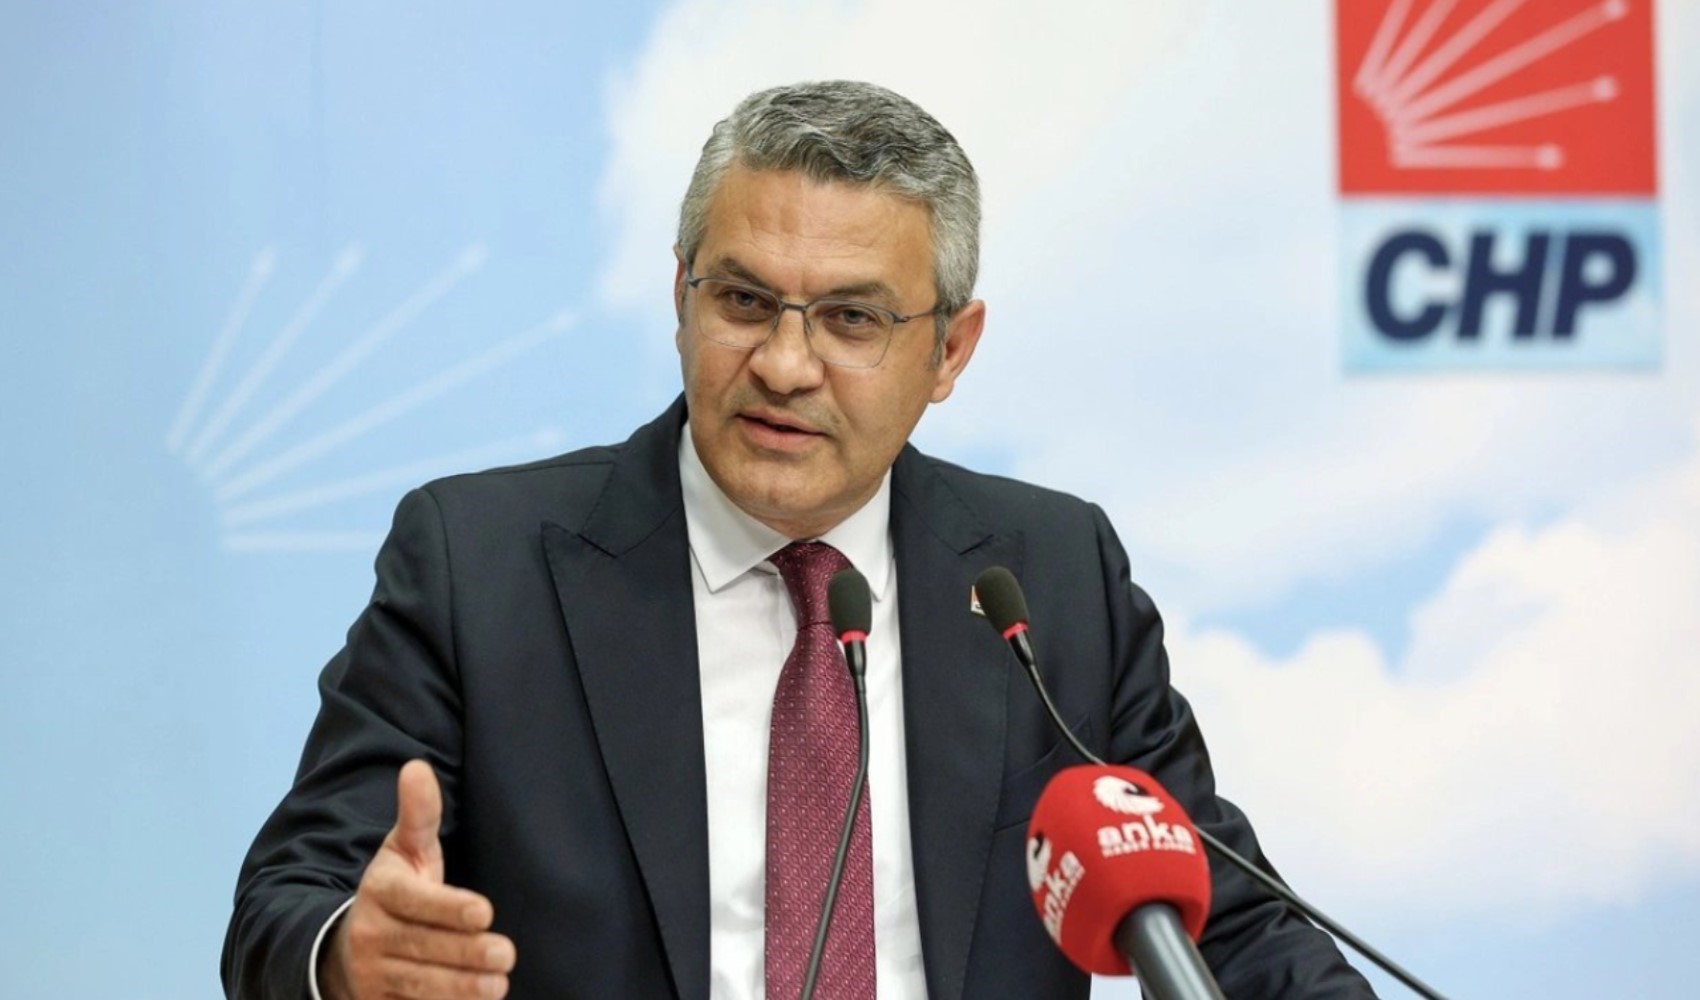 CHP'li milletvekilinden 'yurt dışı çıkış harcı' tepkisi: 'Deli Dumrul vergisini tamamen kaldırın'